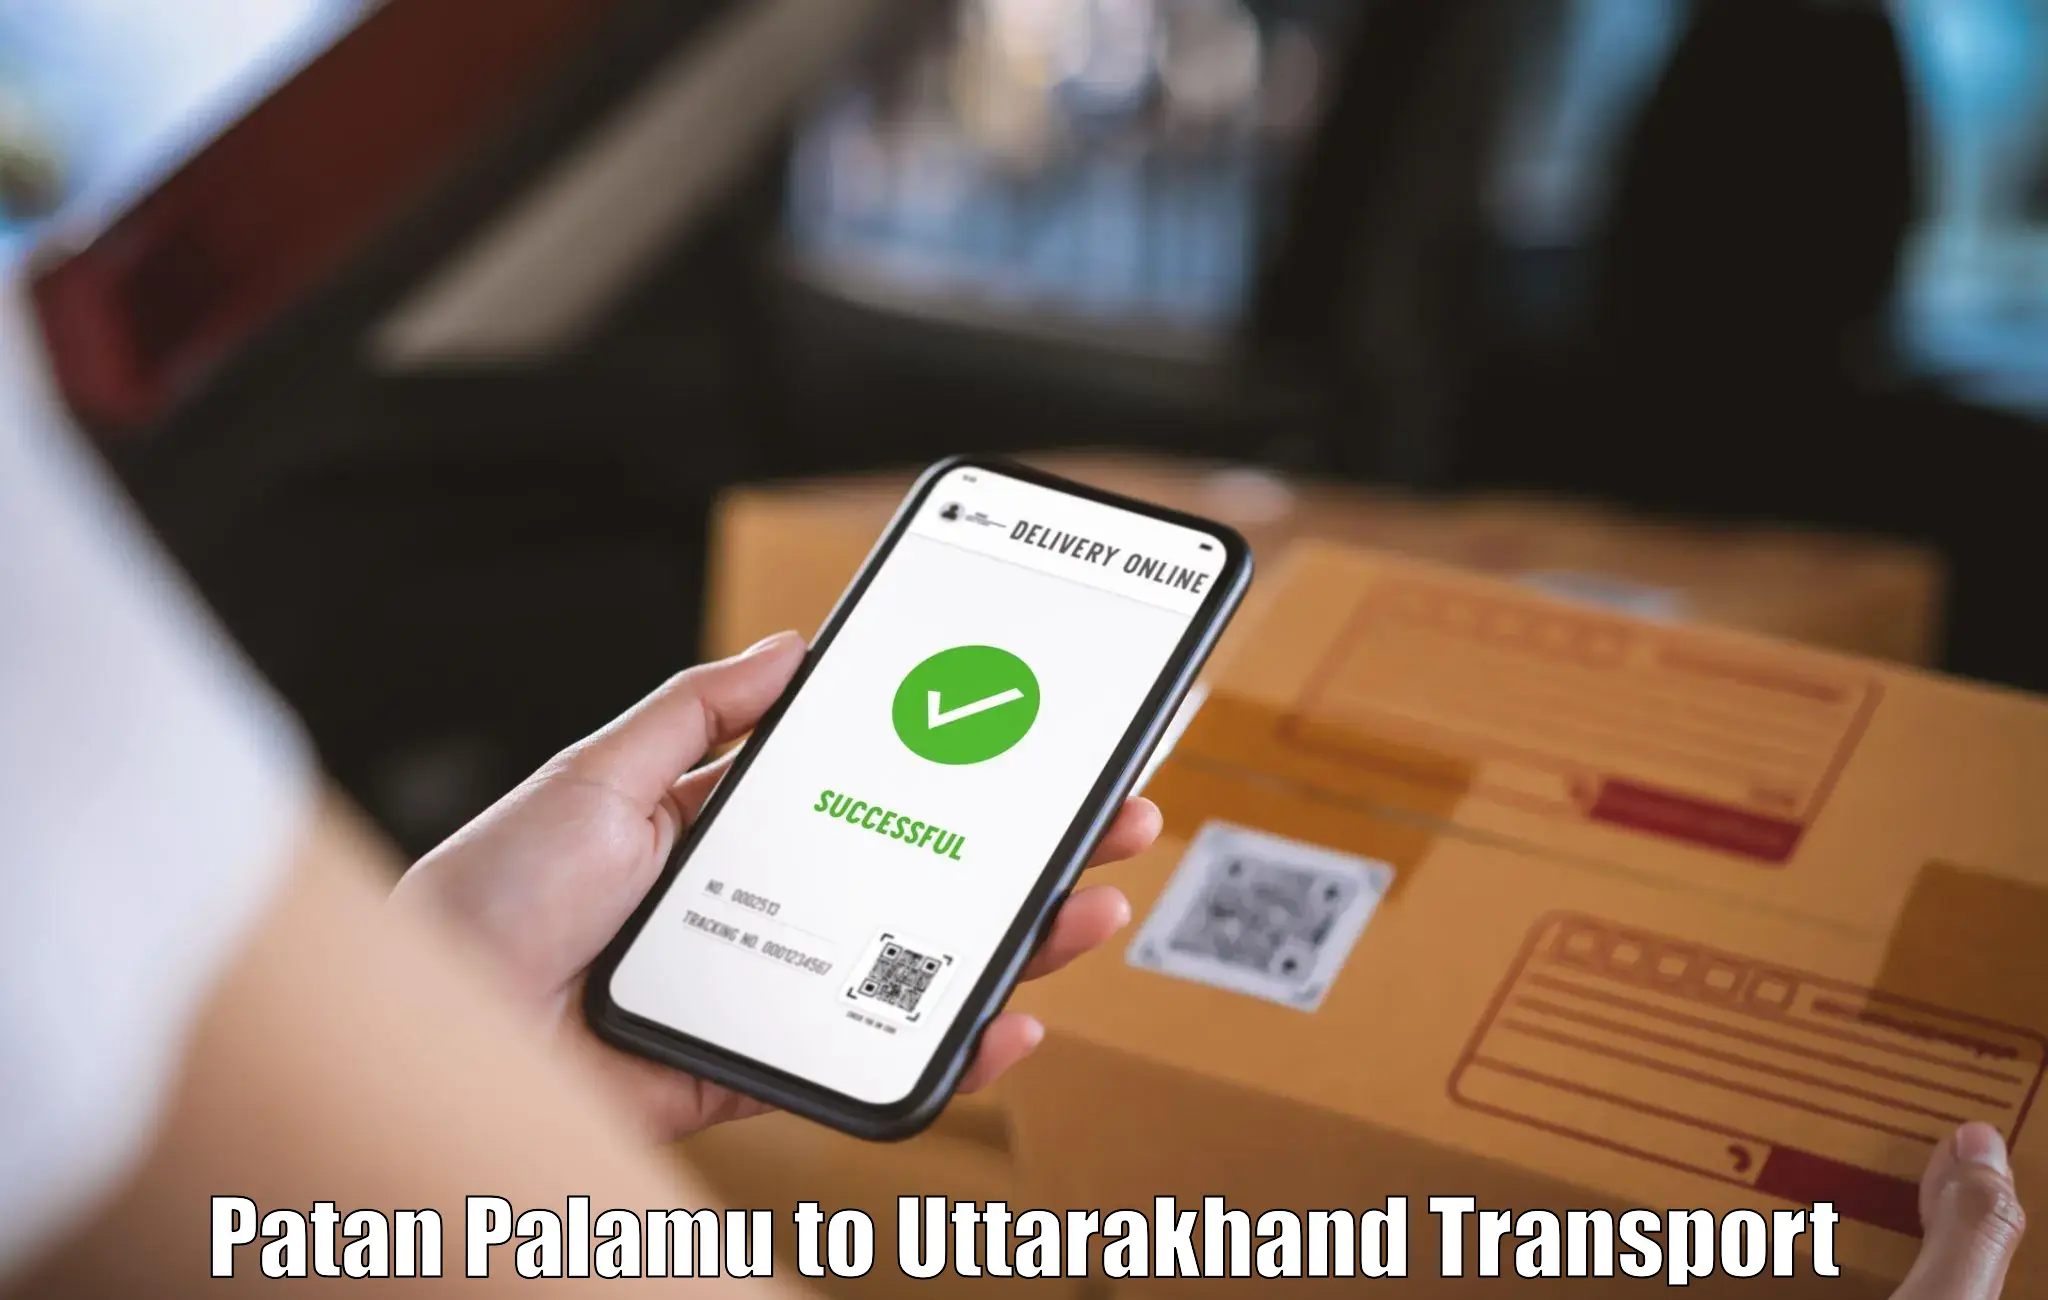 Domestic transport services Patan Palamu to Uttarkashi